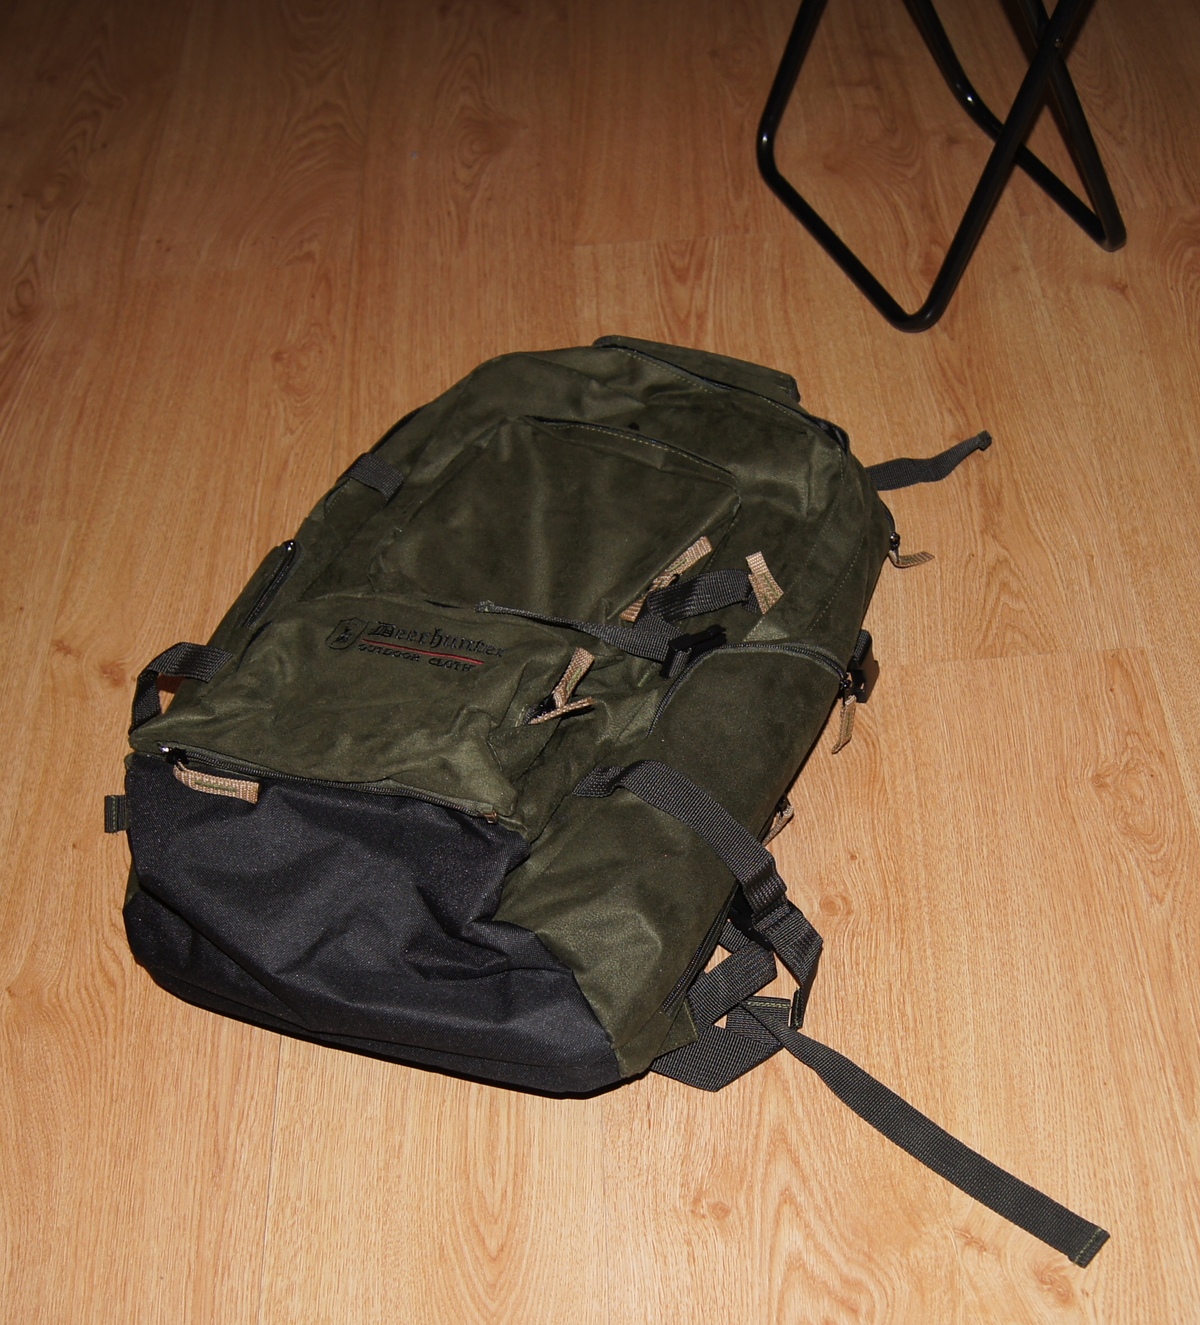  Deerhunter backpack.